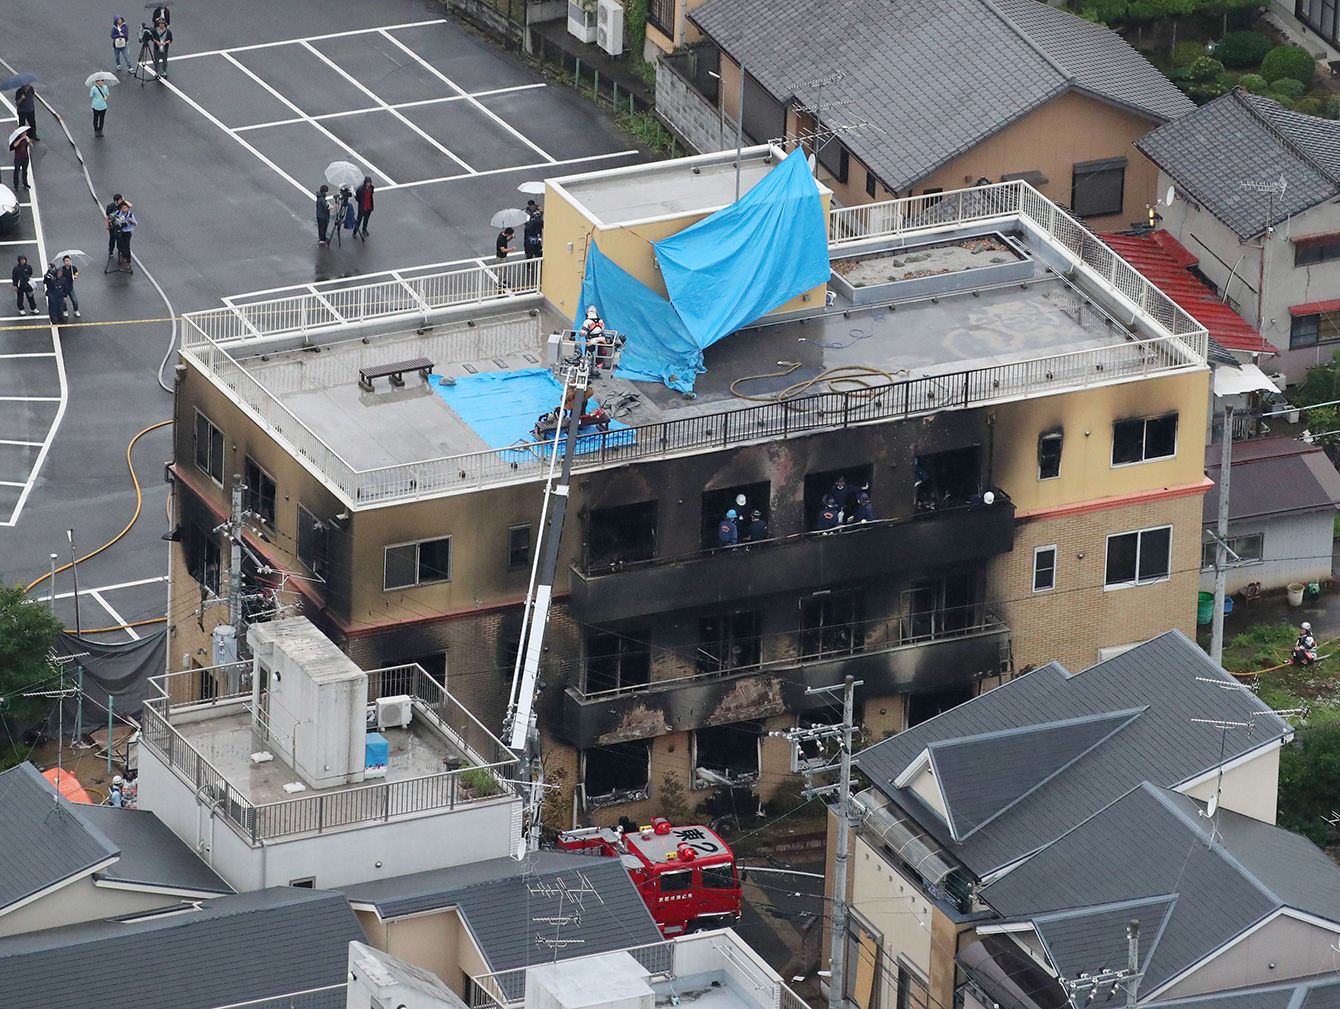 アニメーション 火災 京都 出火から30秒で高温の煙が充満、京アニ放火事件の火災メカニズムを検証